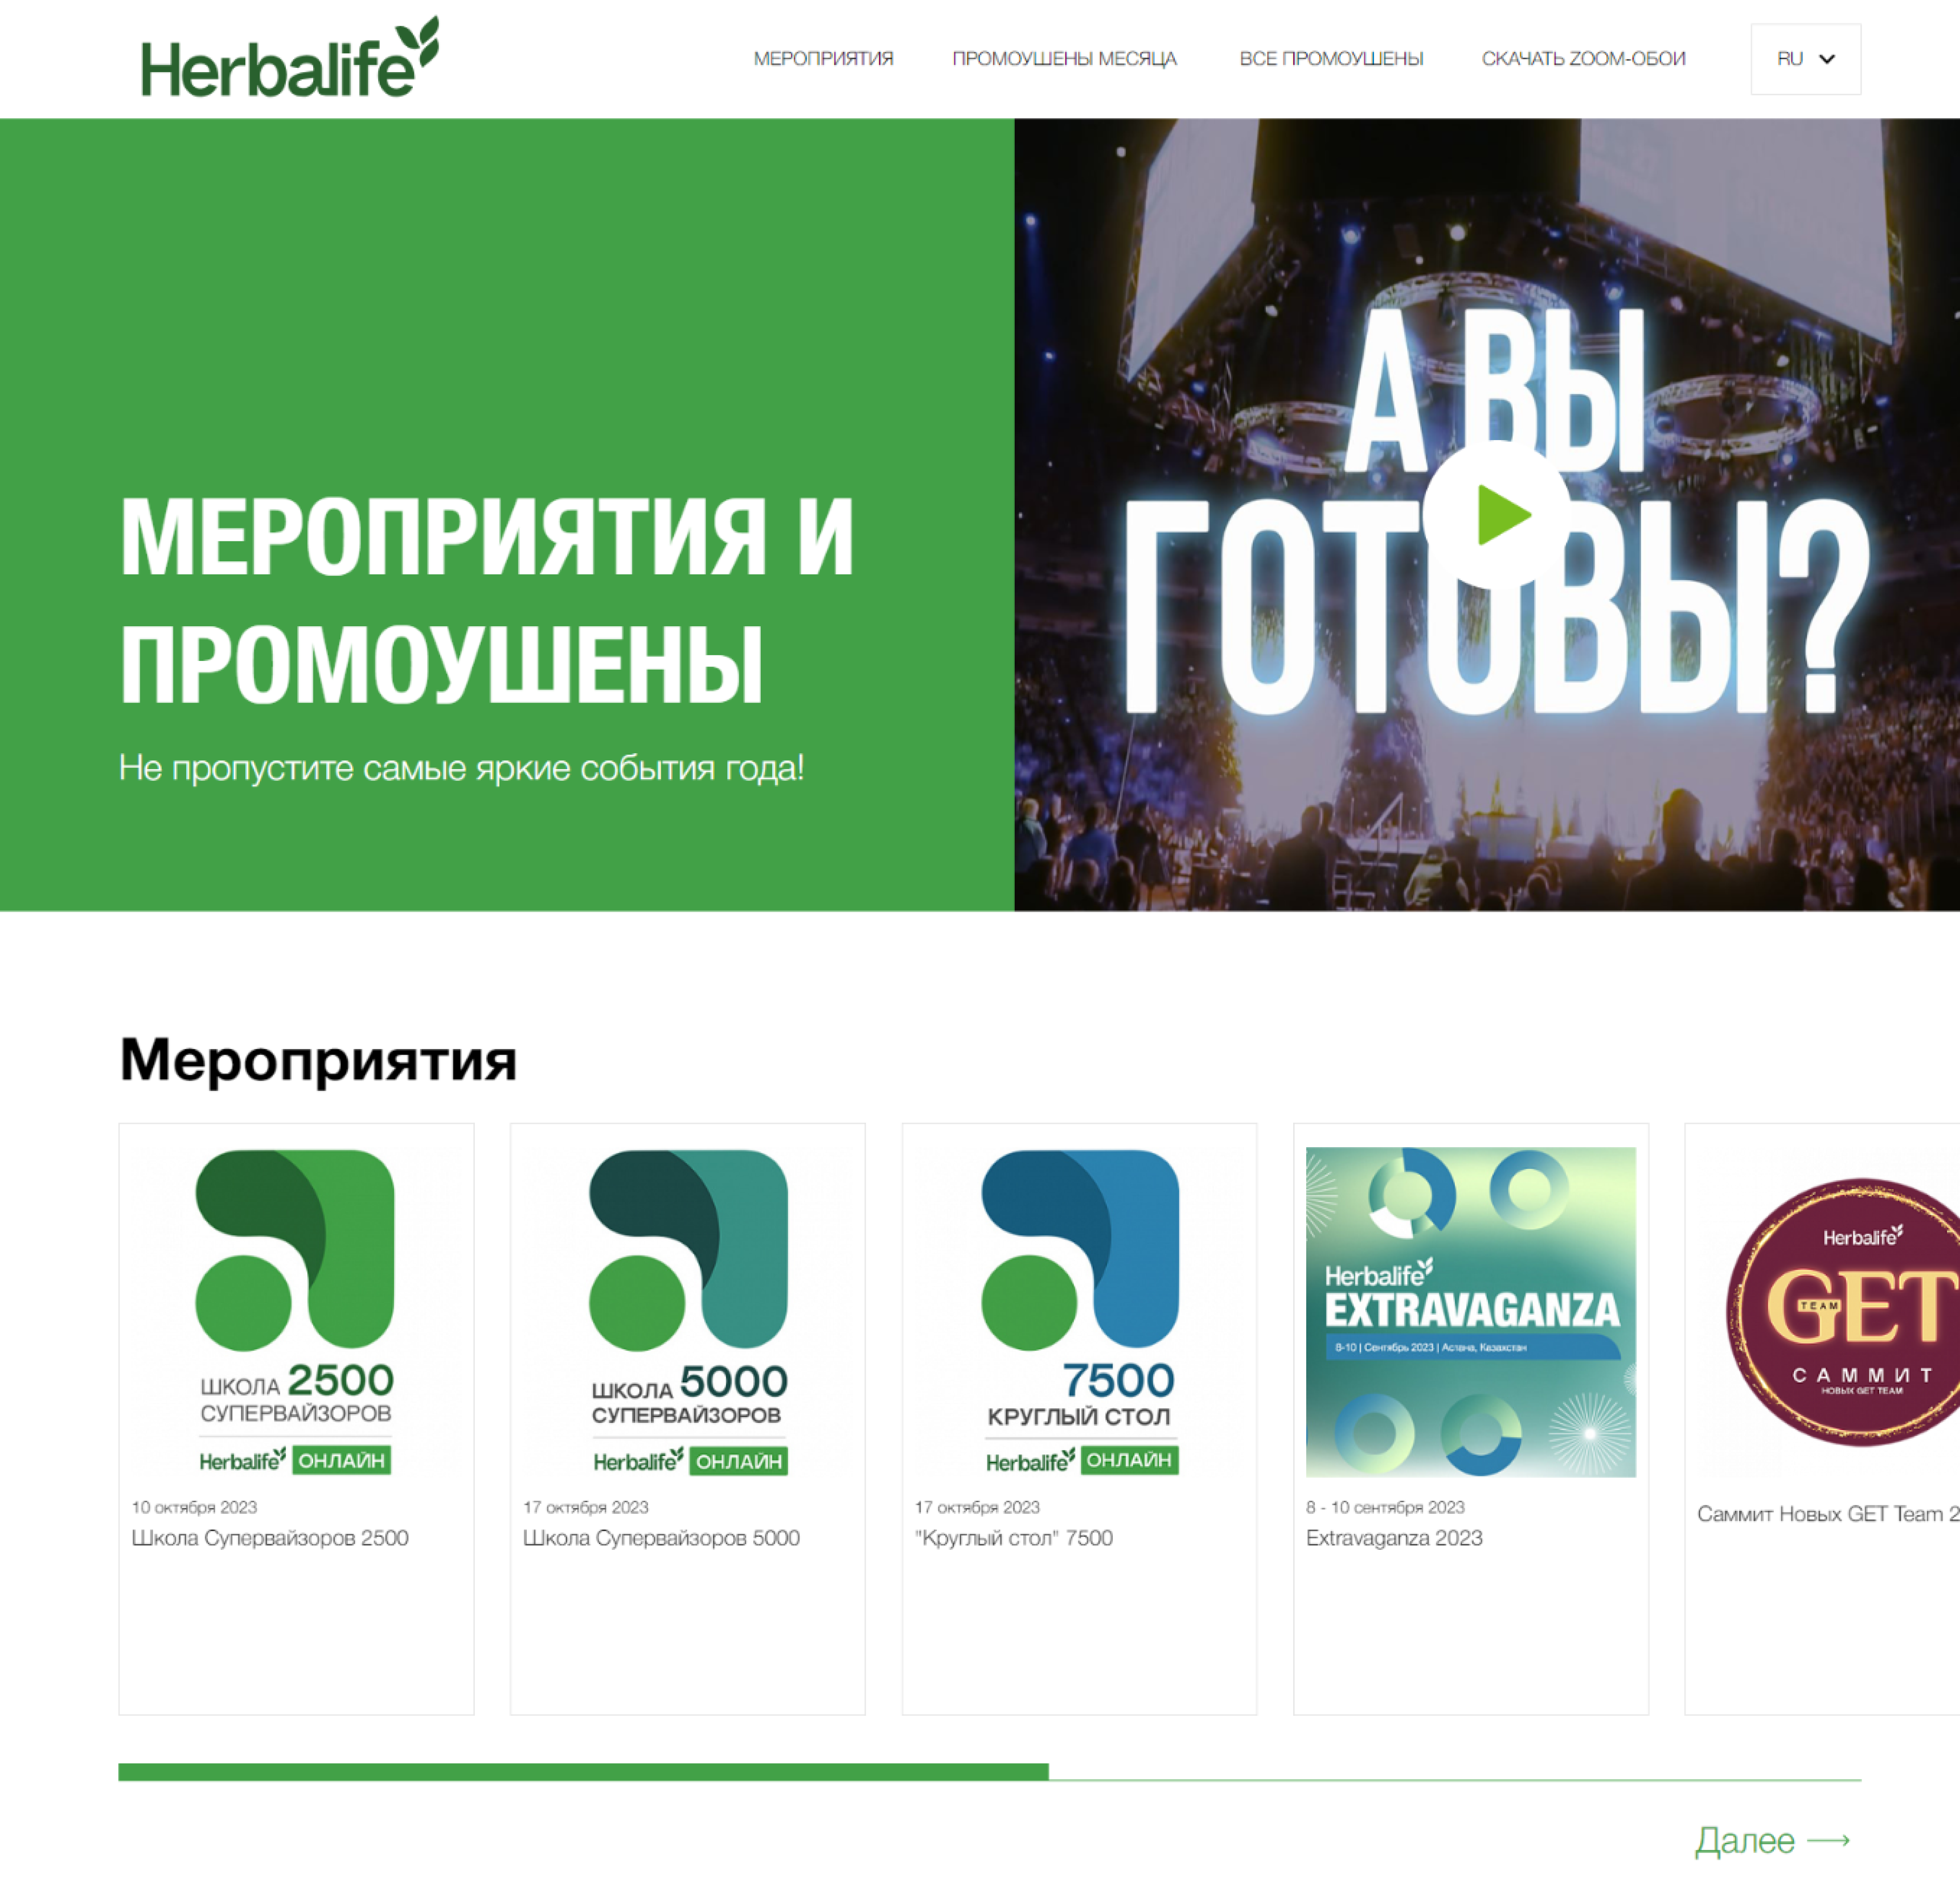 herbalife: официальный промо-сайт мероприятий и промоушенов